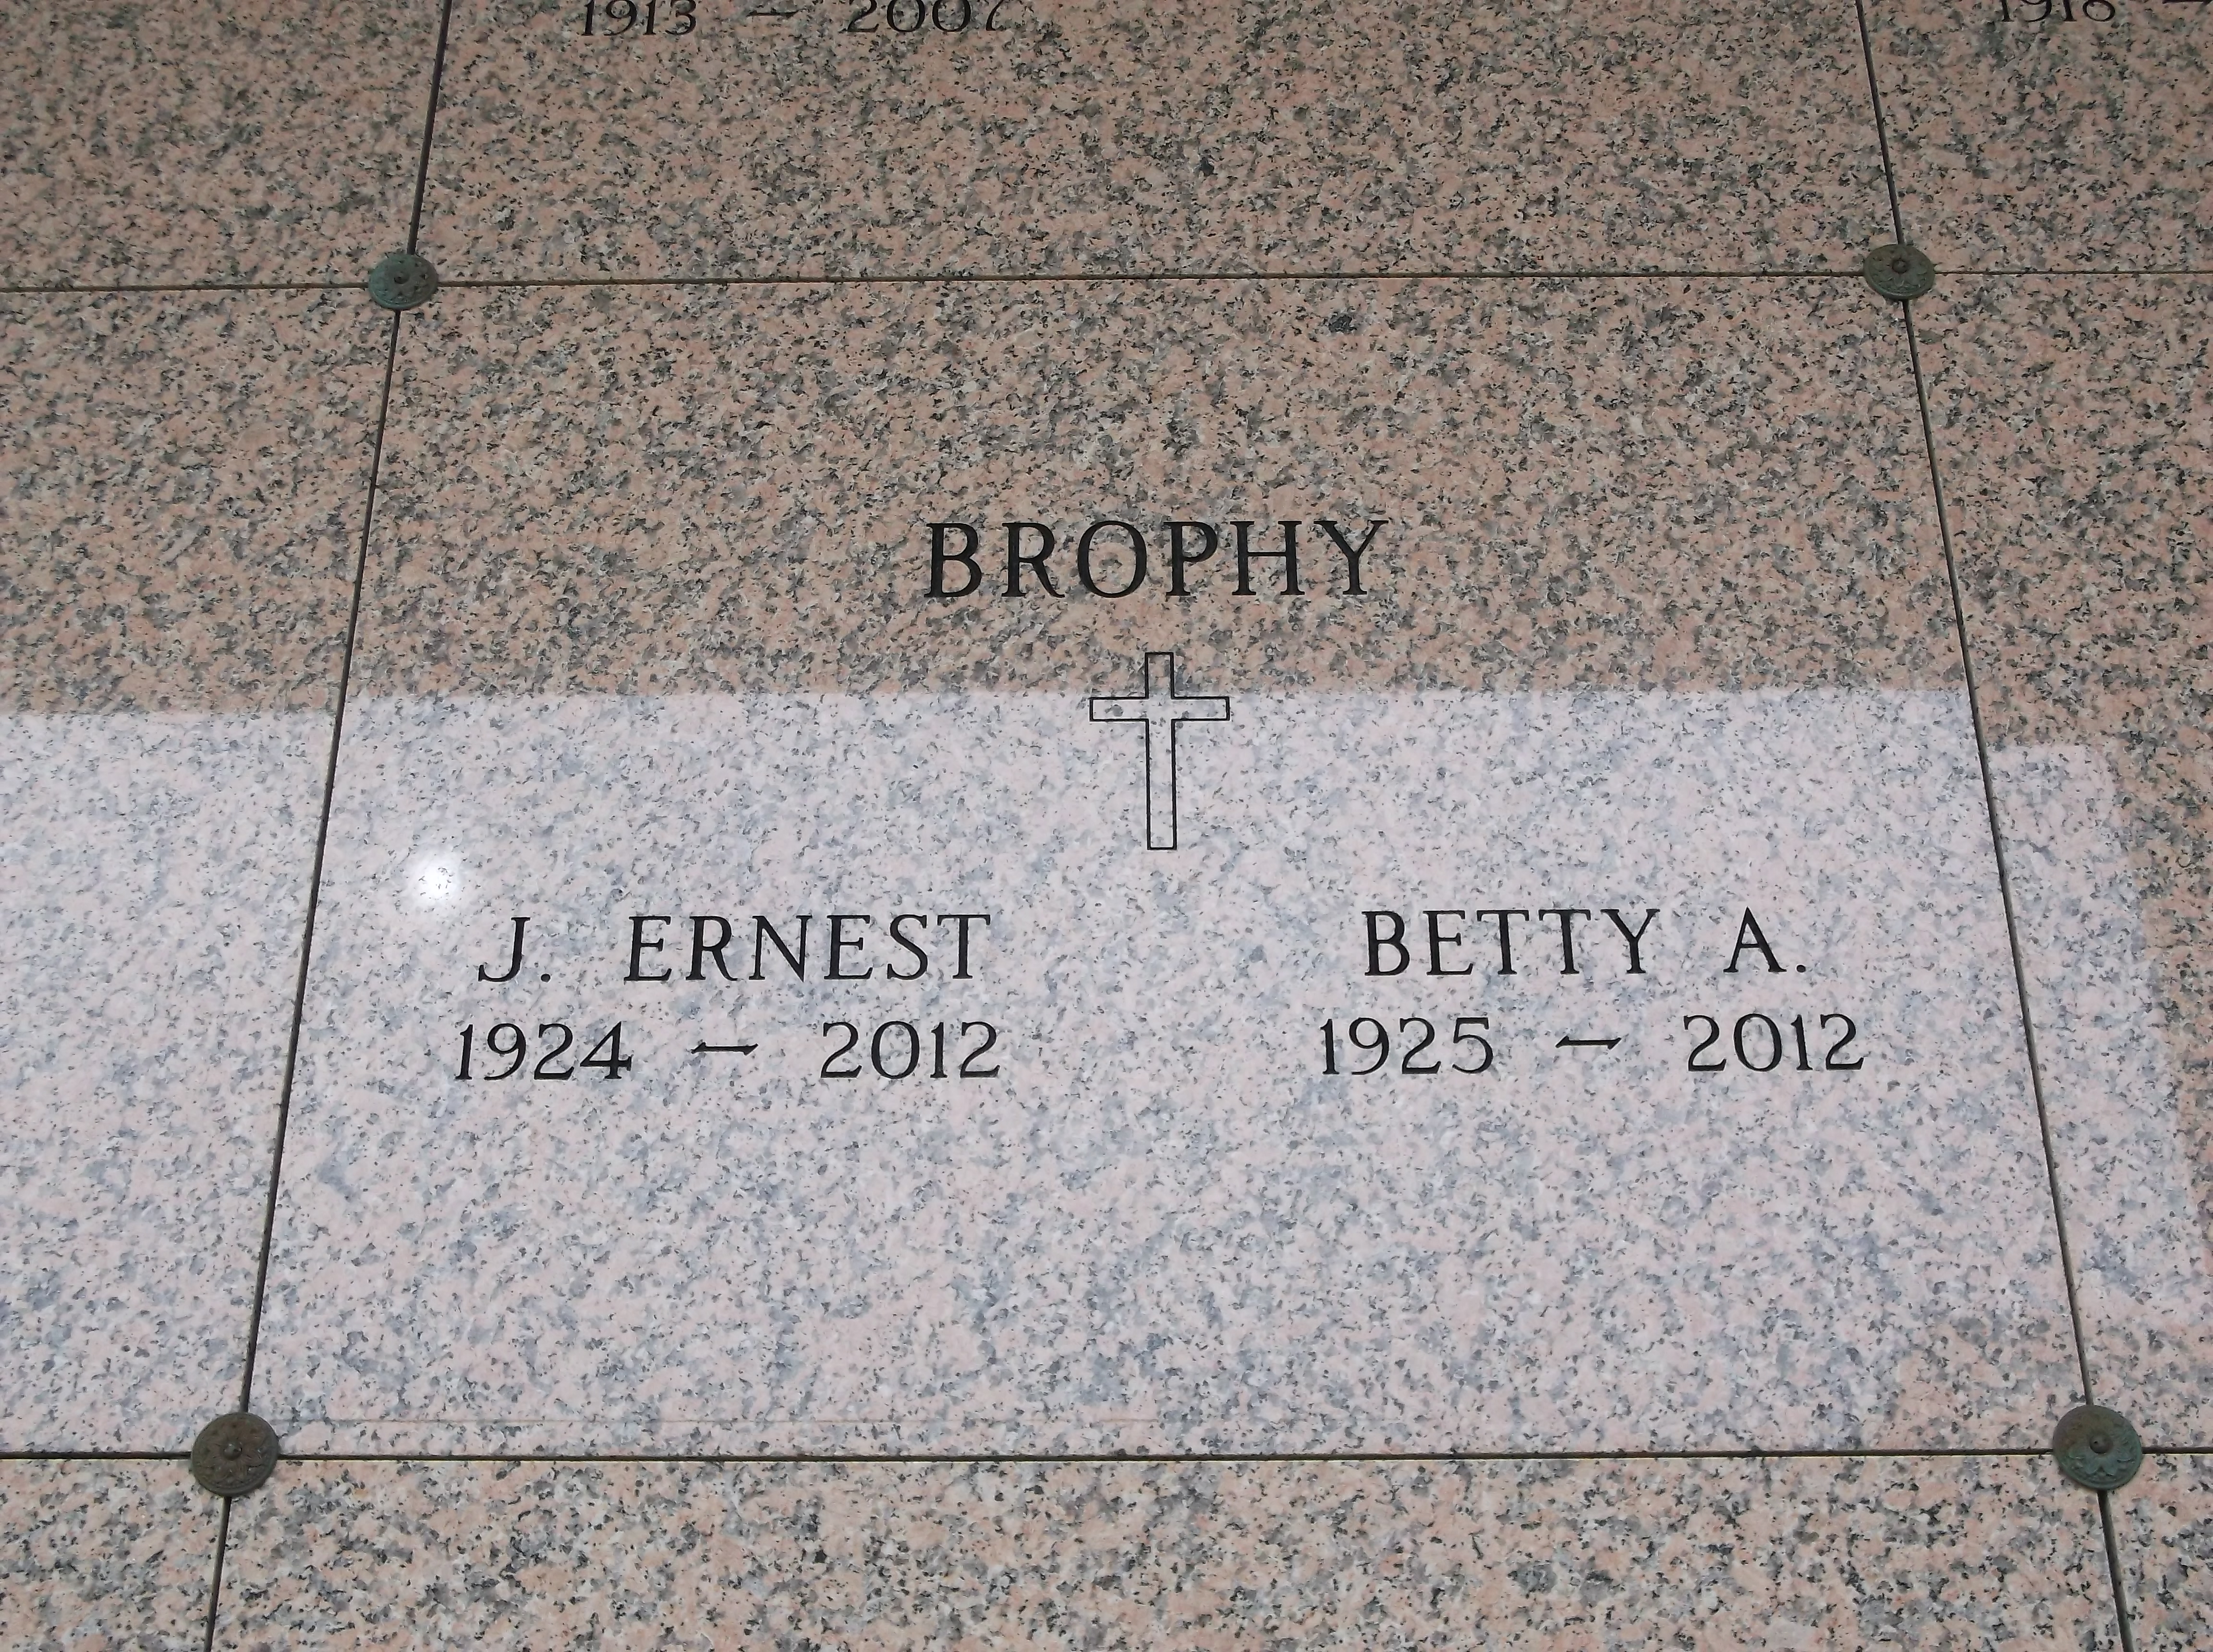 J Ernest Brophy